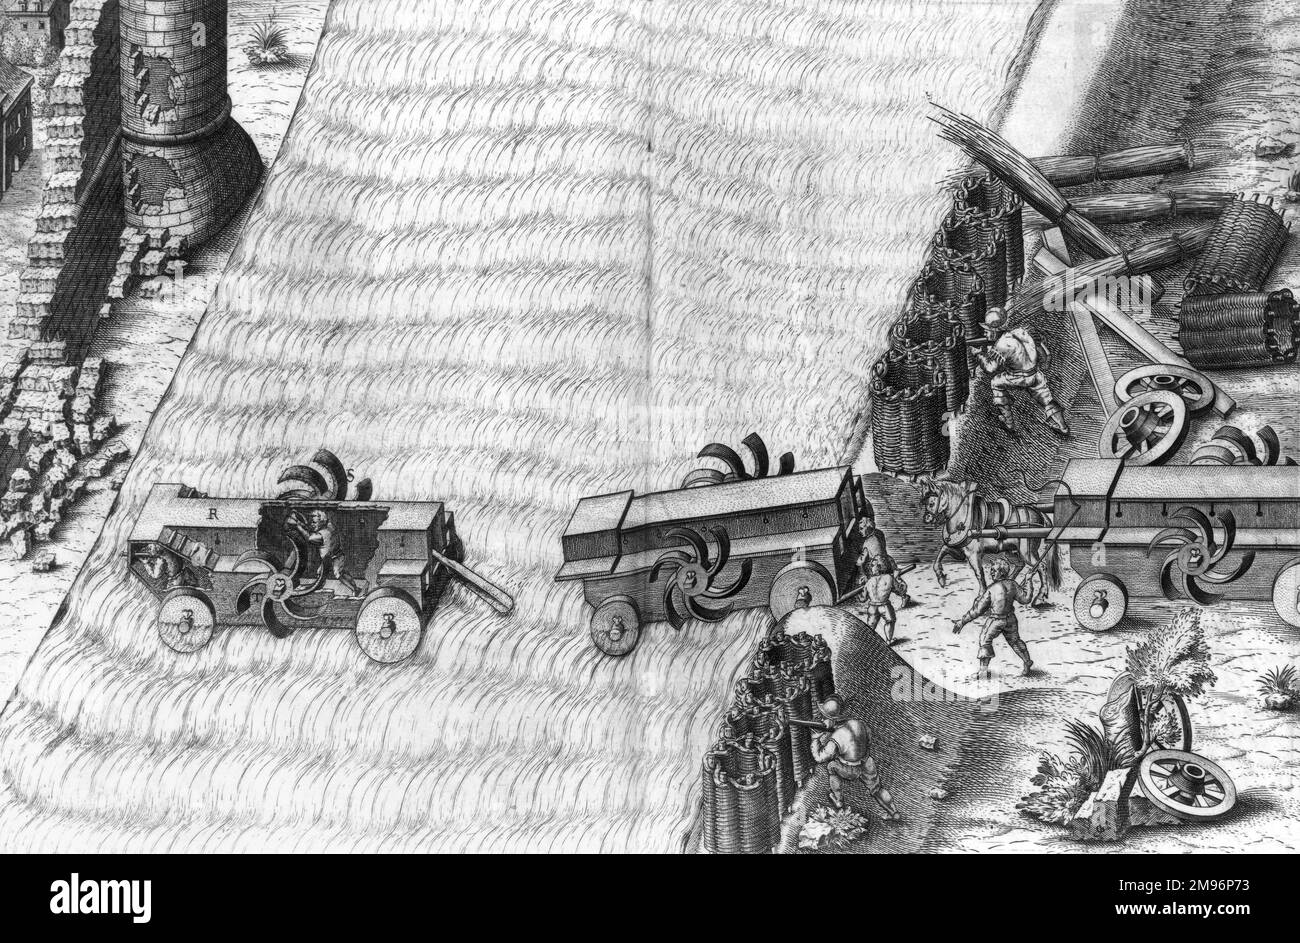 Un esempio di un'arma da assedio militare del 16th° secolo progettata per aiutare un esercito a conquistare la massima furtività nei loro attacchi, consentendo loro di attaccare mentre sommersi sott'acqua. Foto Stock